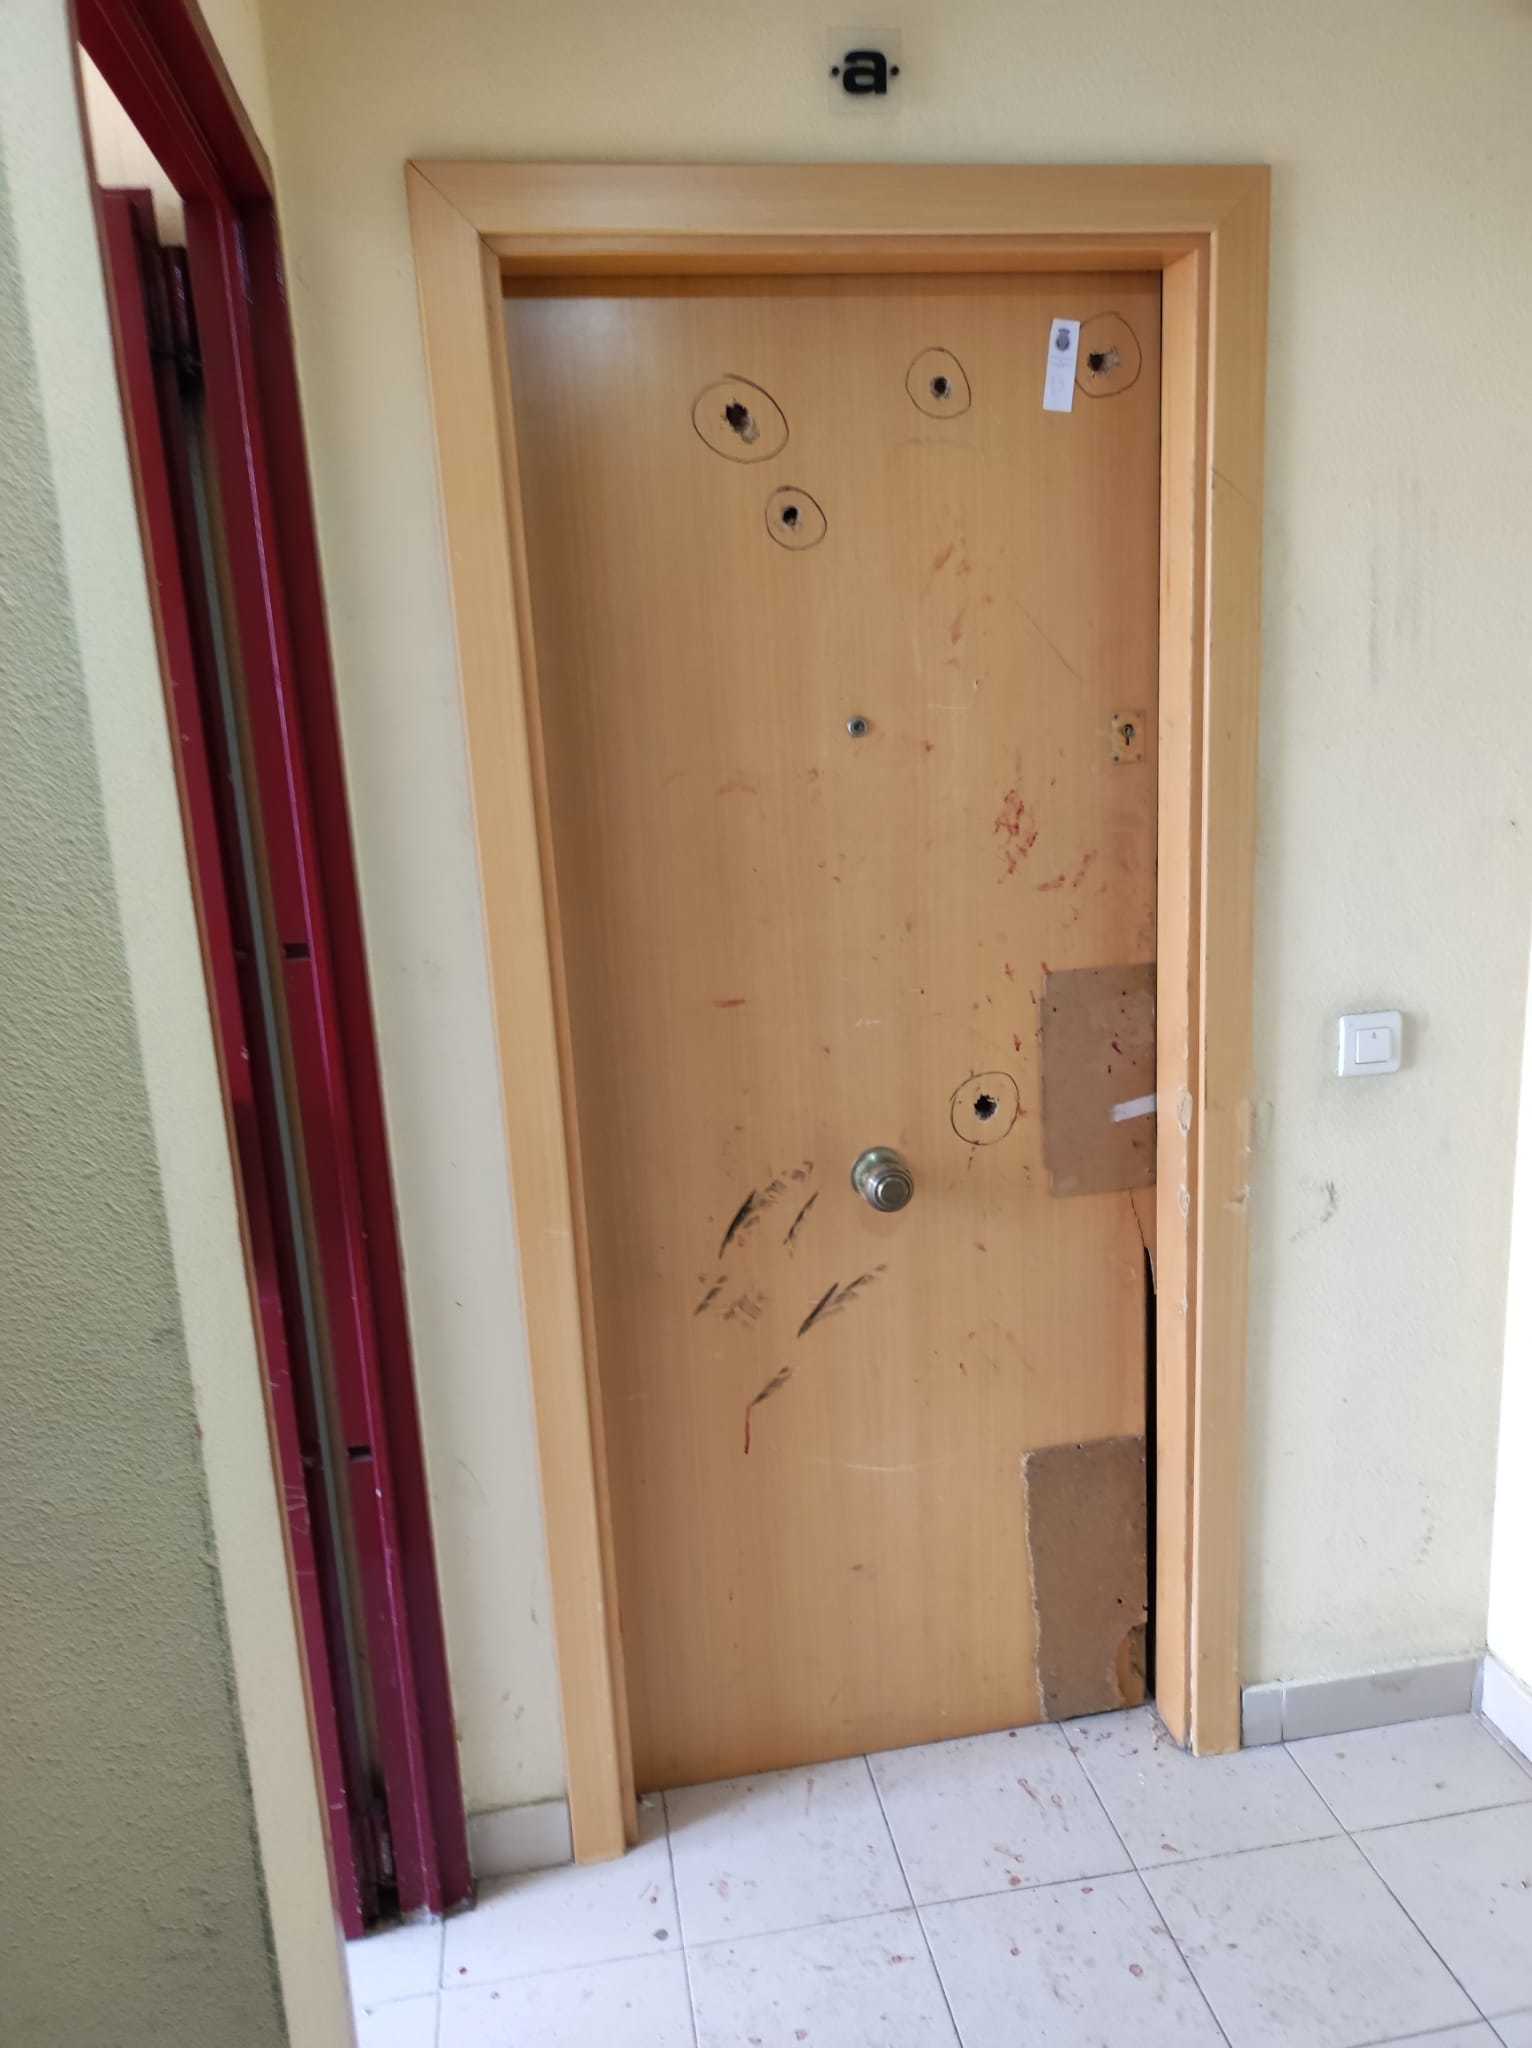 Varios de los disparos en la puerta de uno de los pisos del nmero 3 de la calle lvarez.